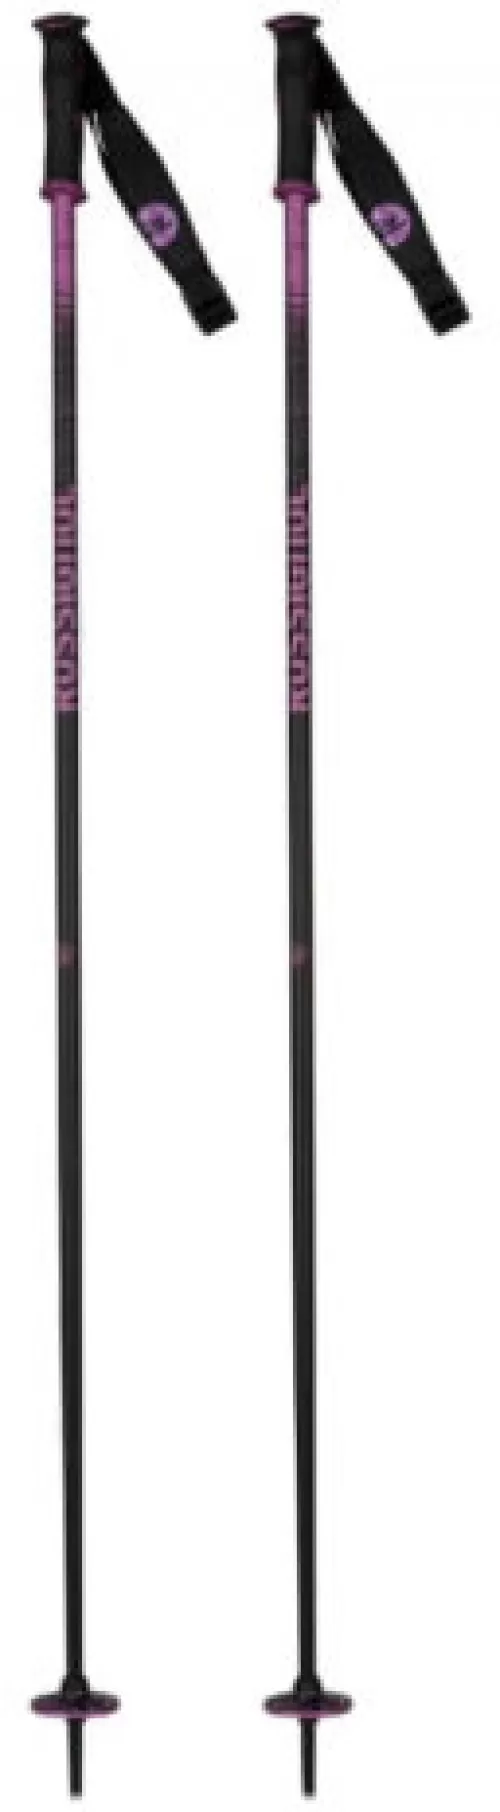 Electra Premium Ski Poles